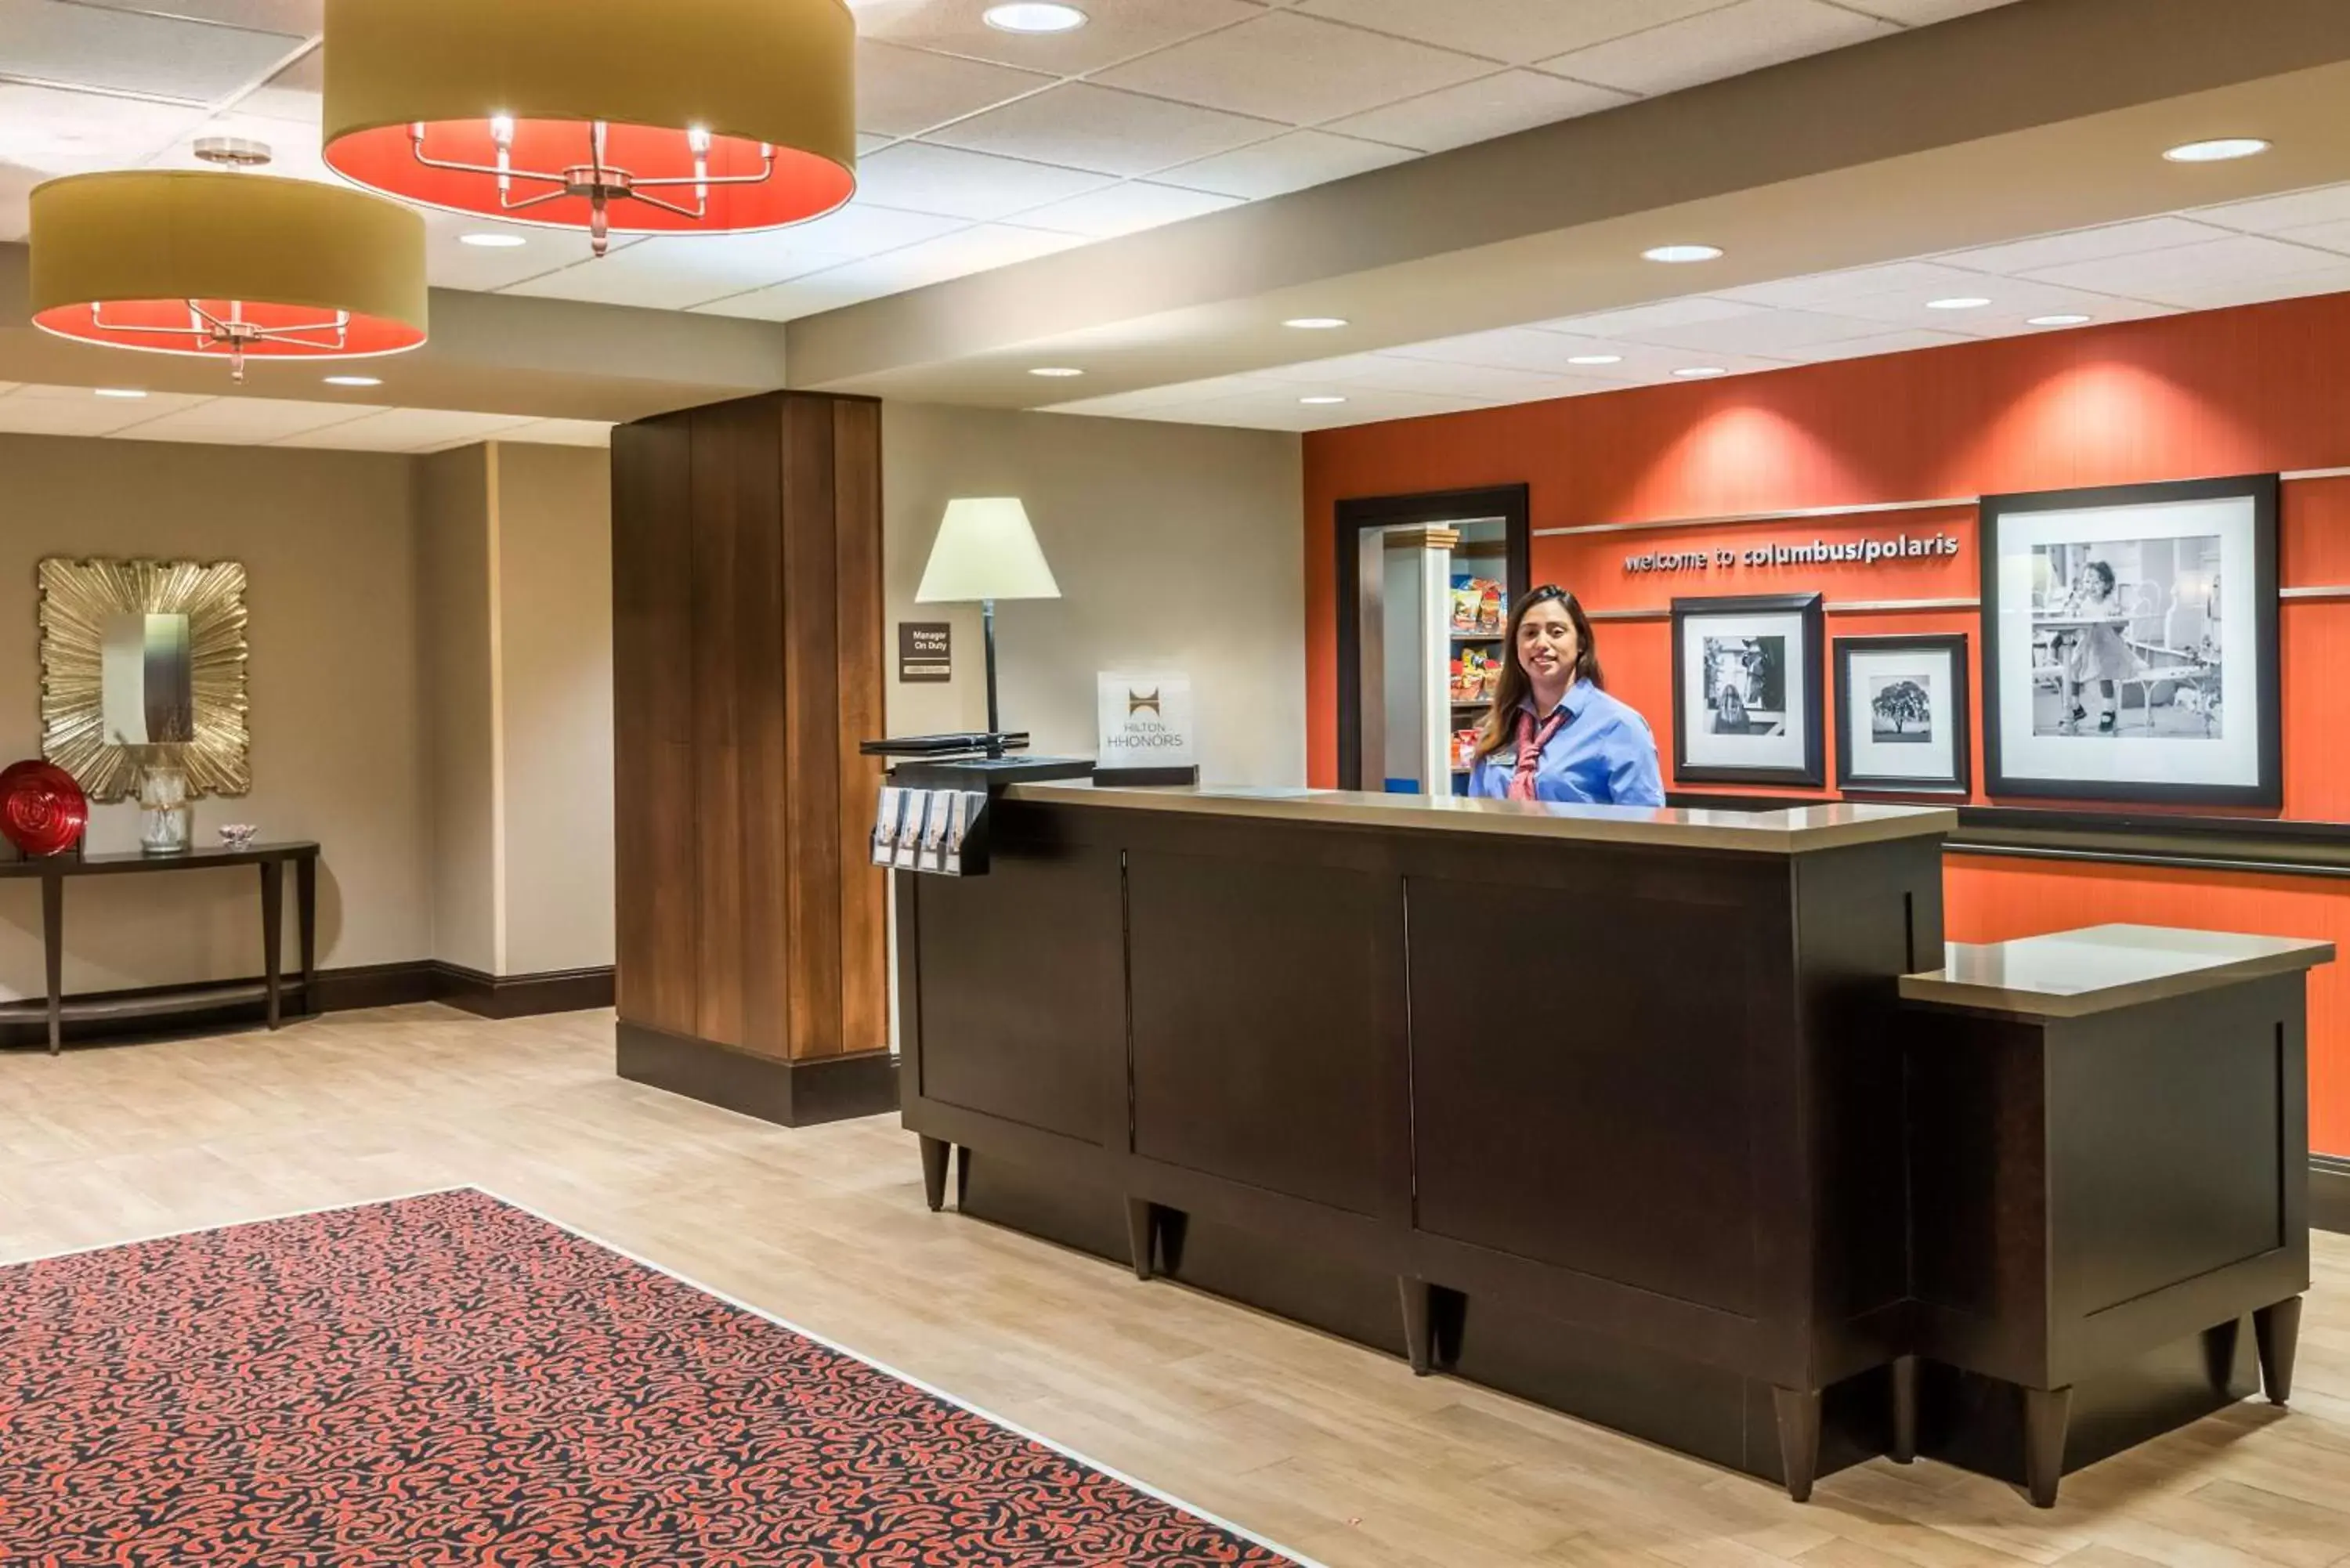 Lobby or reception in Hampton Inn & Suites Columbus Polaris